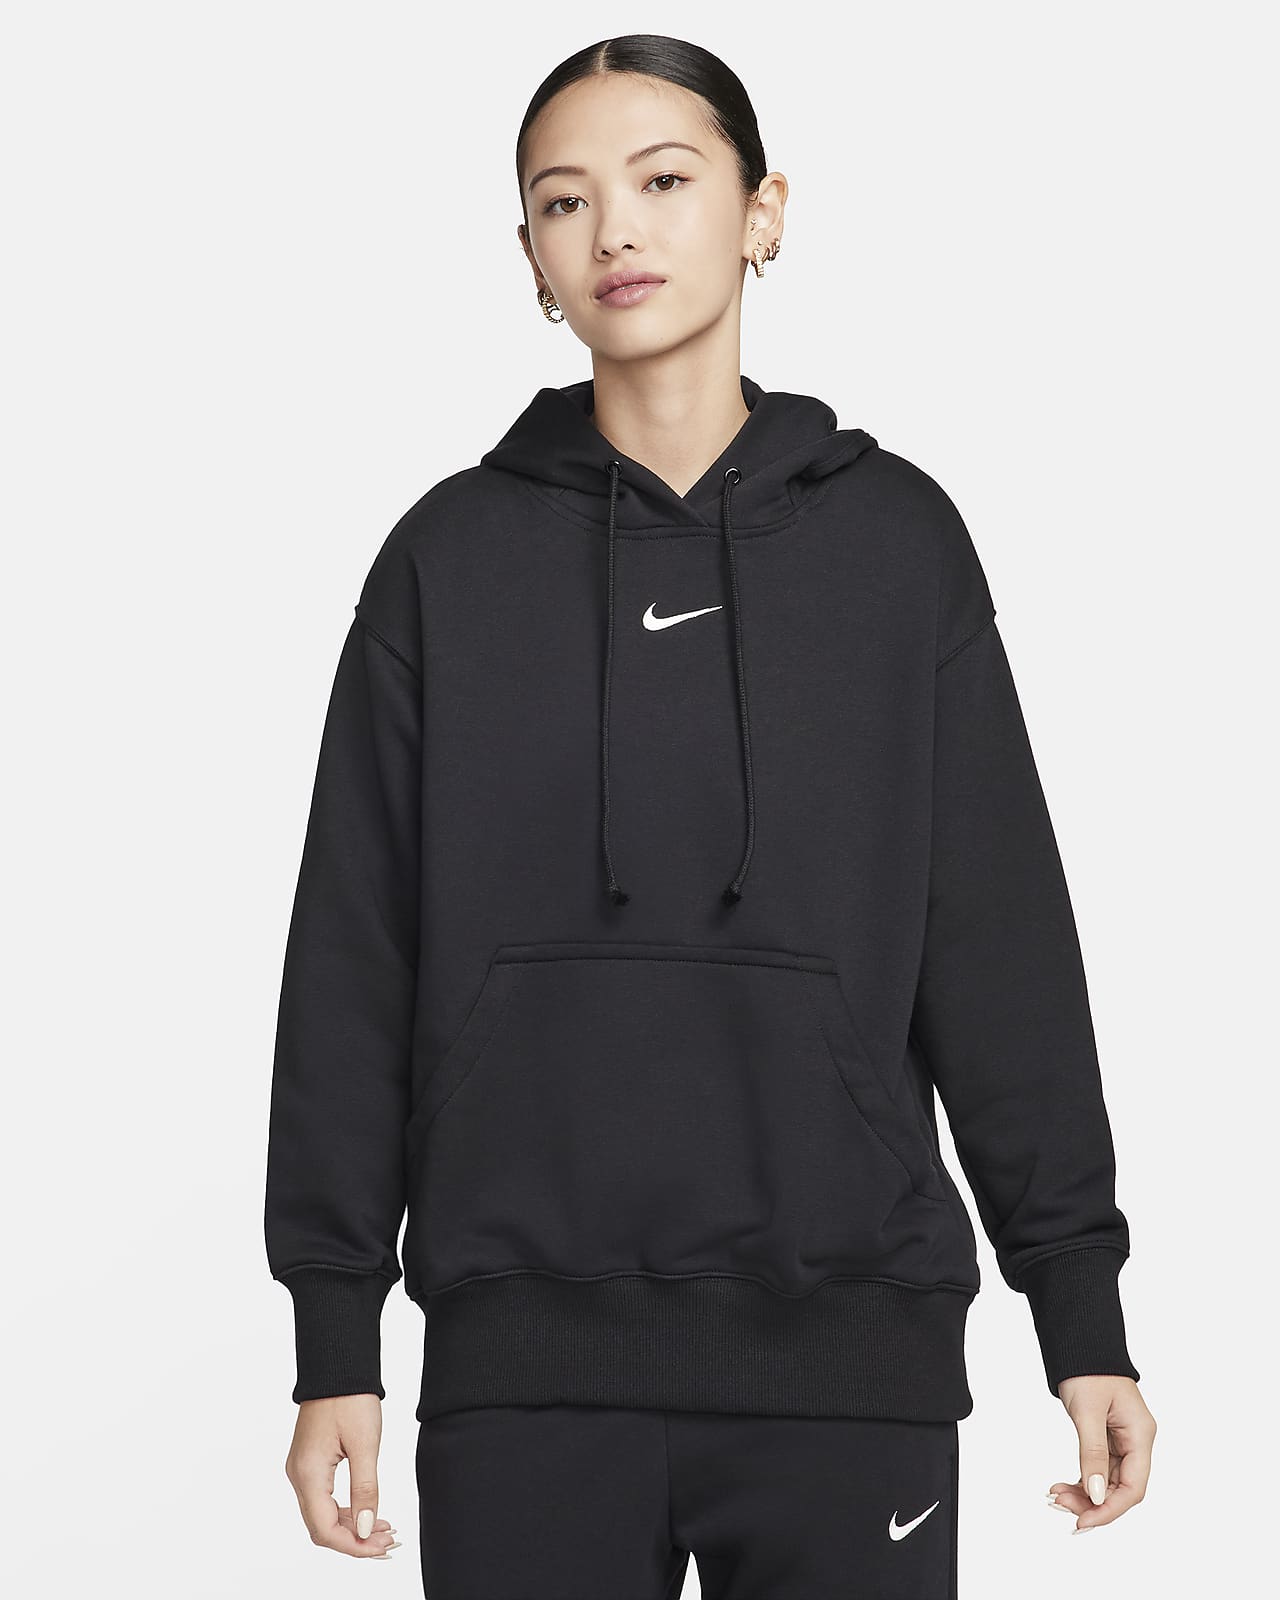 Nike Sportswear Phoenix Fleece Women's Oversized Sweatshirt French